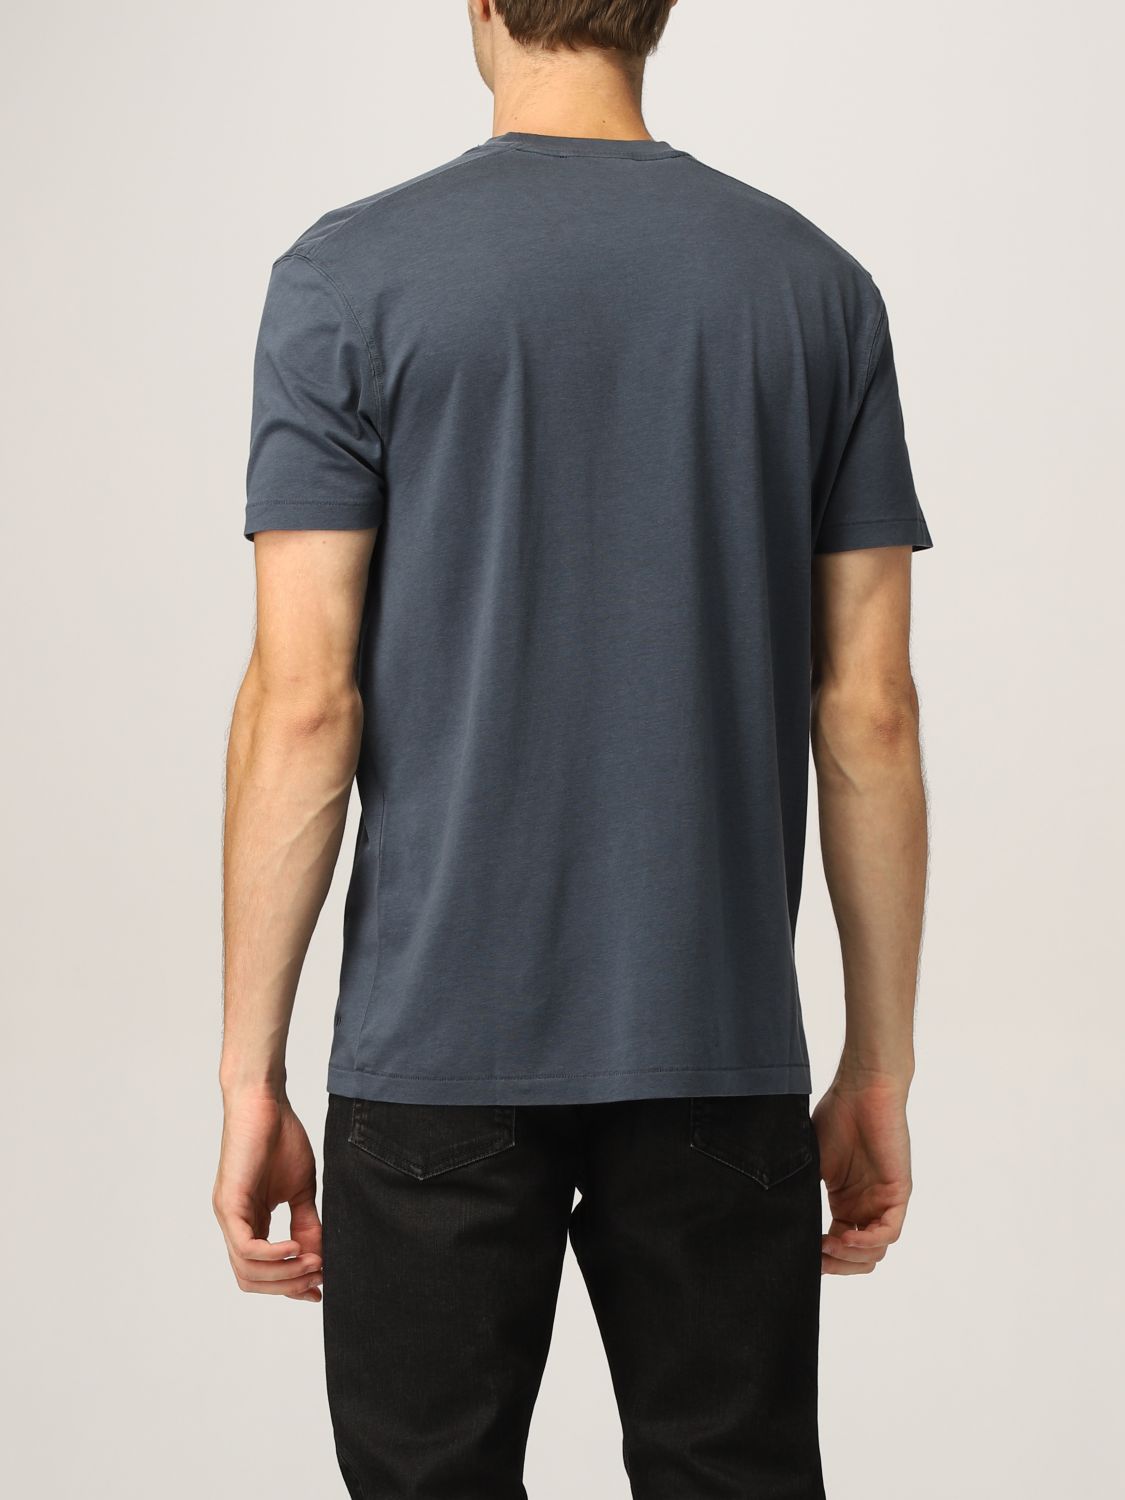 Camiseta Tom Ford: Camiseta hombre Tom Ford azul oscuro 2